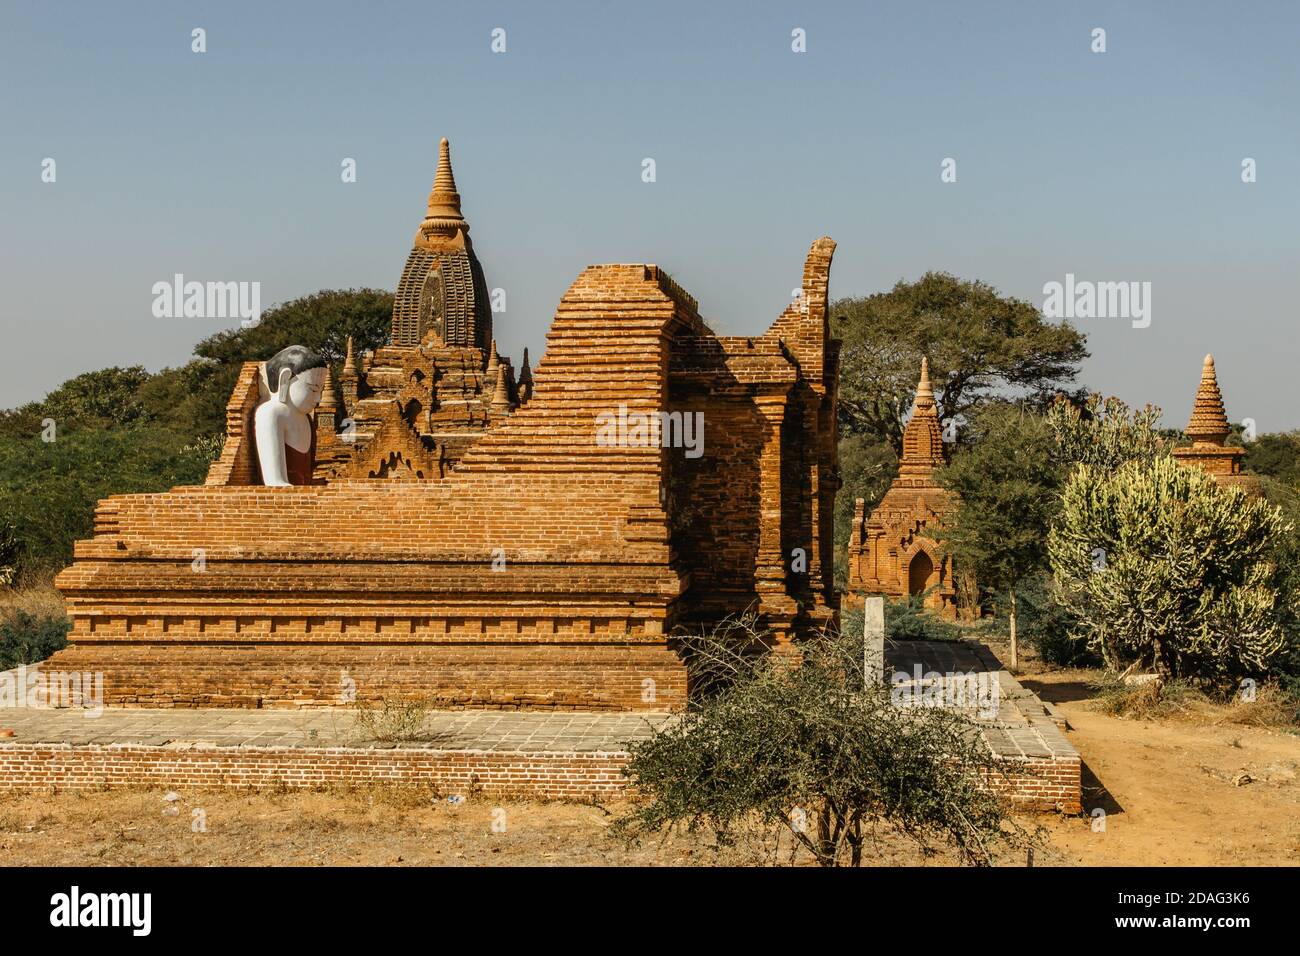 Old Bagan, Myanmar - 27 janvier 2020. Pagode bouddhiste antique. Panorama des vieux temples à Bagan. Groupe de pagodes anciennes avec statue de Bouddha.exotique h Banque D'Images